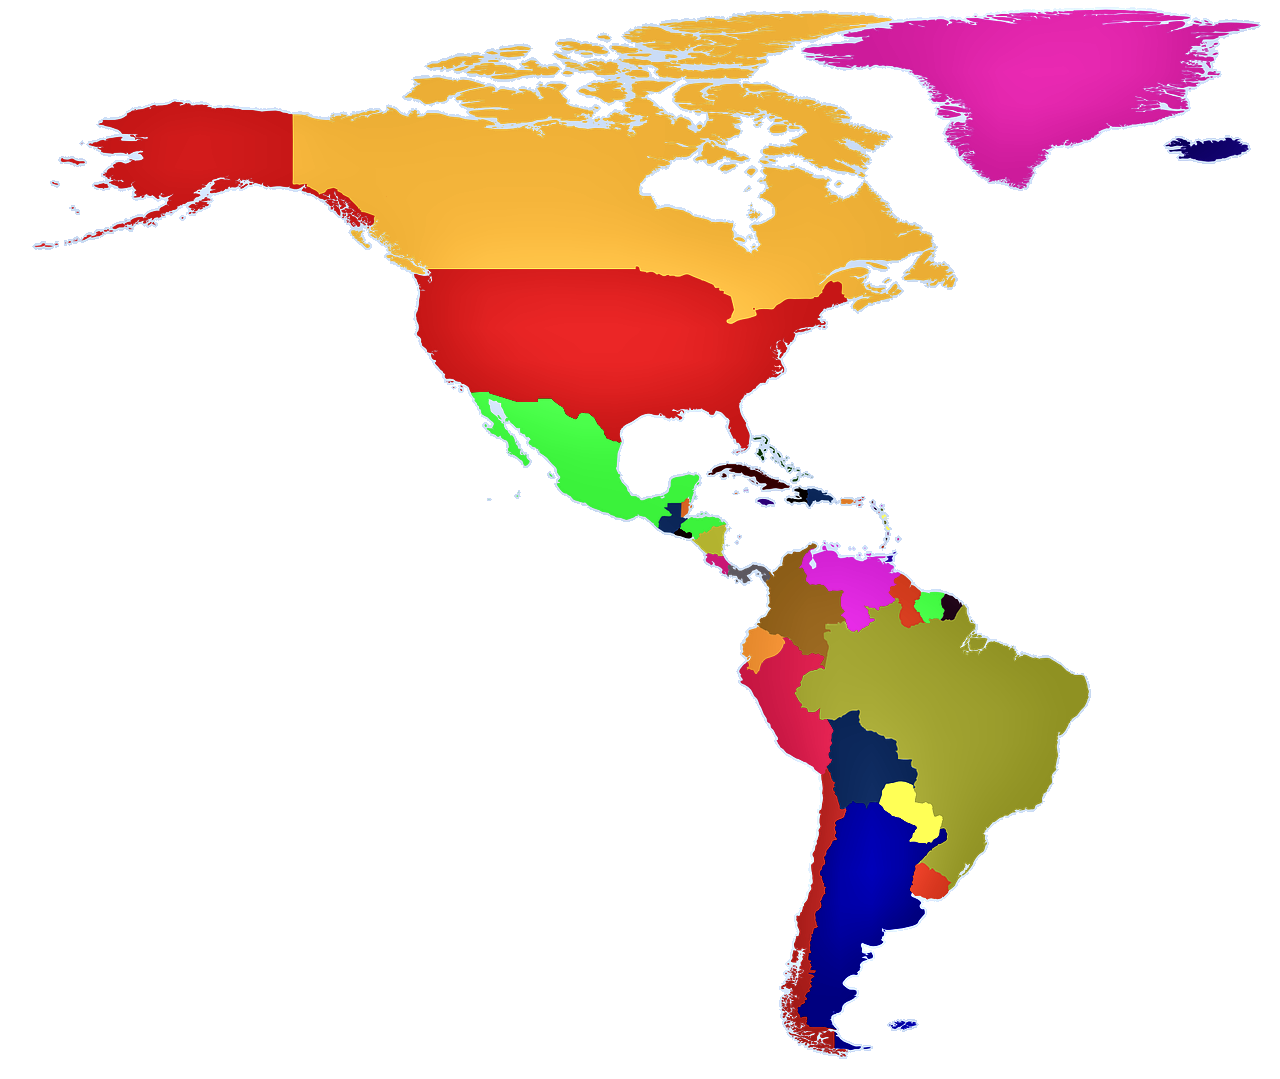 Juegos de Geografía | Juego de Países de América en el mapa (II